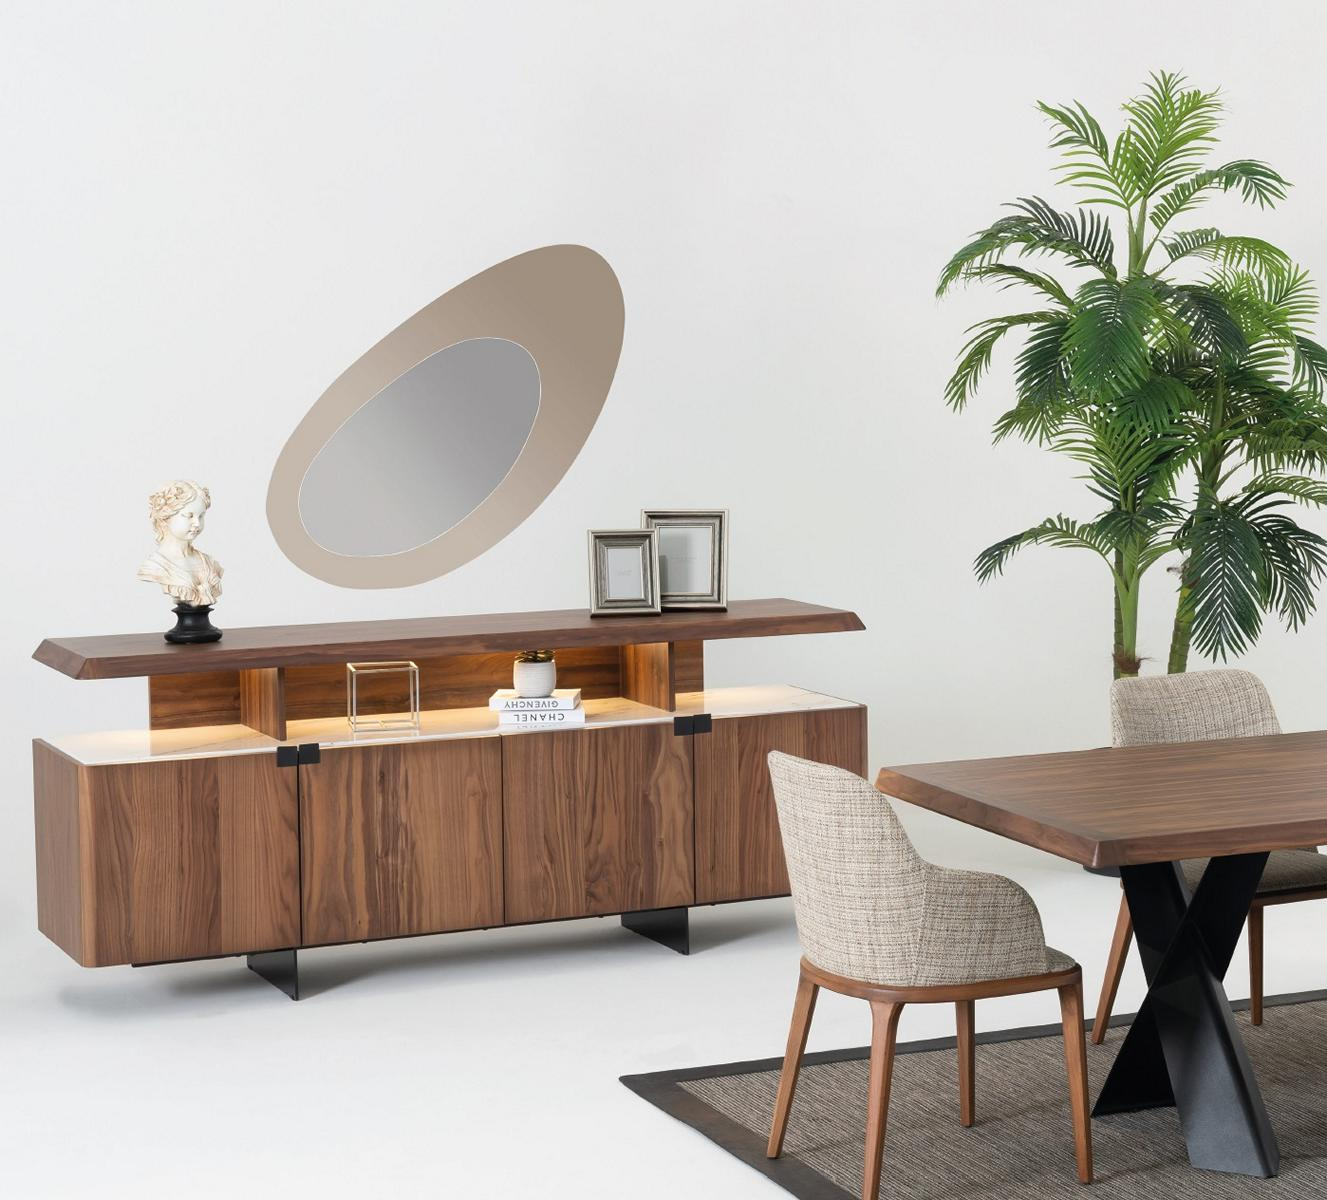 2tlg Luxus Holz Kommode Schrank Sideboard Anrichte Design Möbel